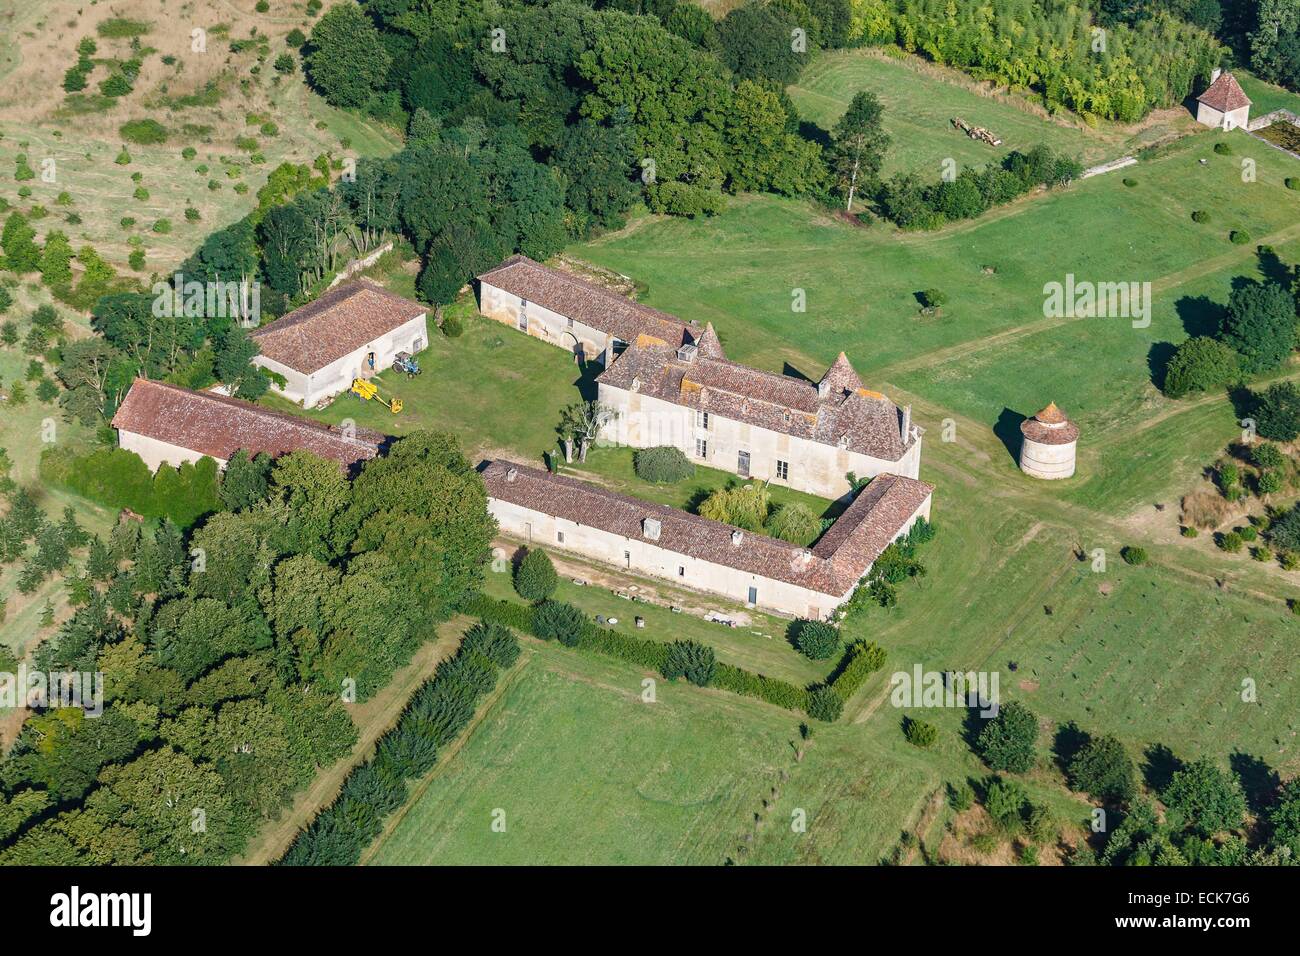 France, Vienne, Saint Maurice la Clouere, château de La Motte (vue aérienne) Banque D'Images